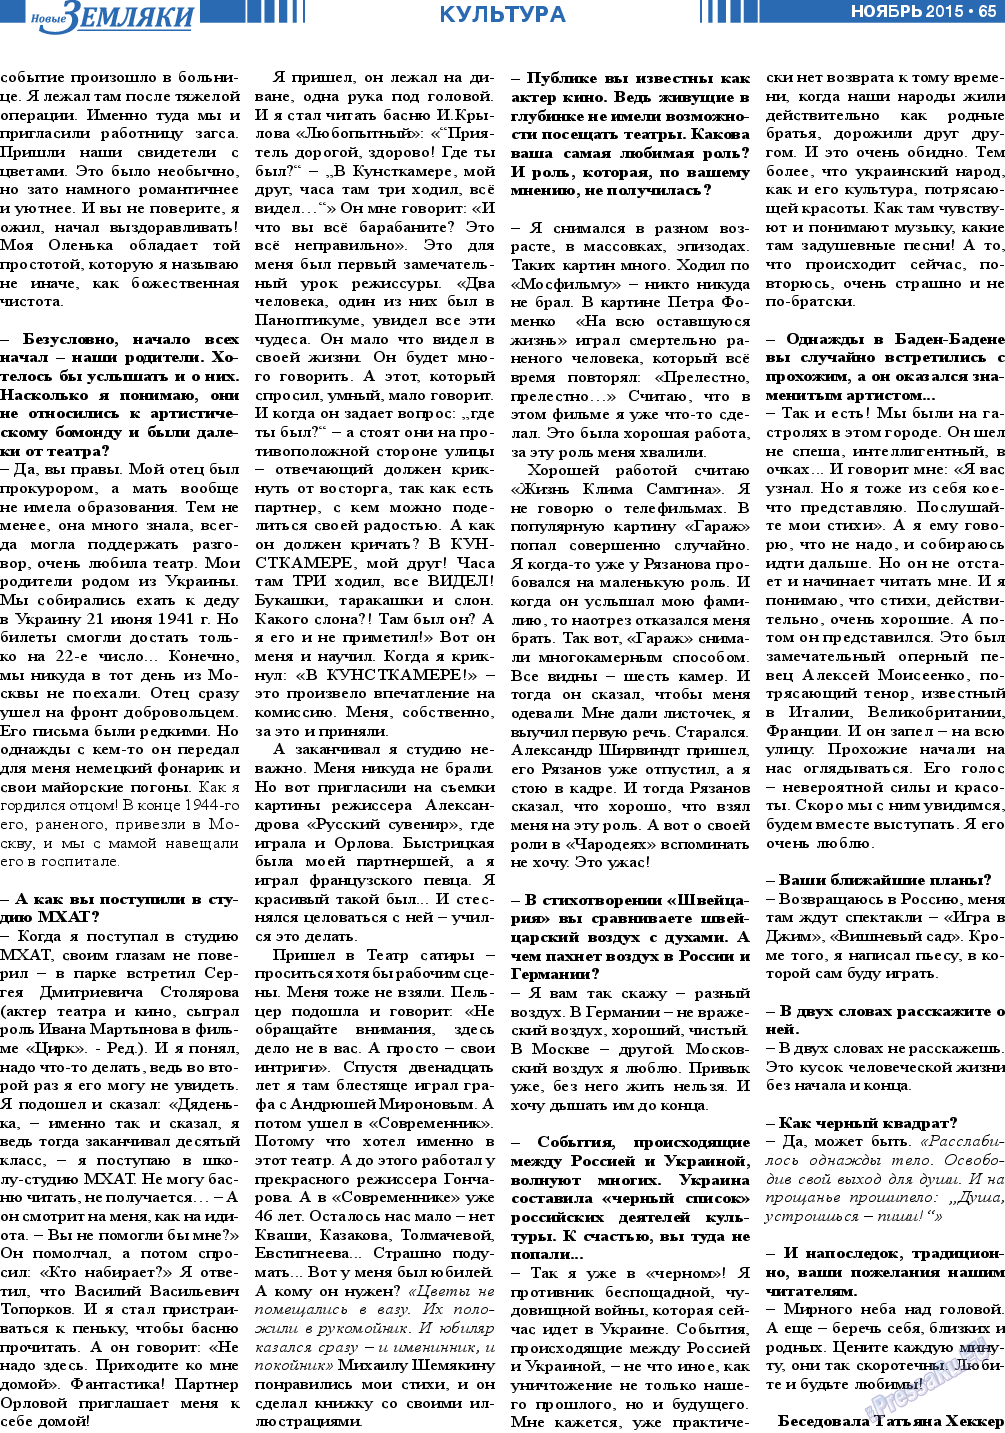 Новые Земляки, газета. 2015 №11 стр.65